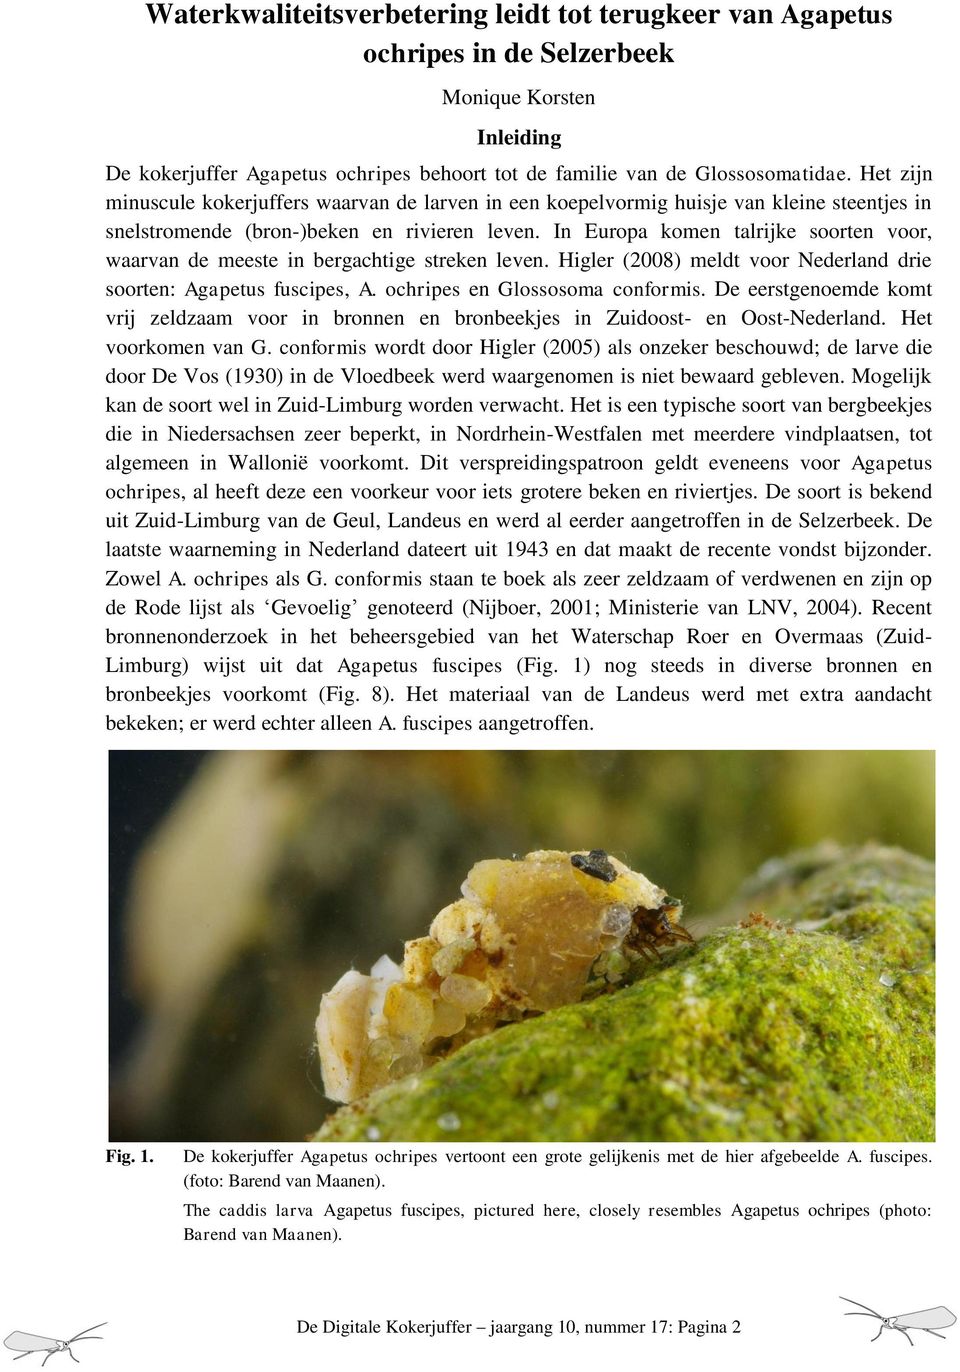 In Europa komen talrijke soorten voor, waarvan de meeste in bergachtige streken leven. Higler (2008) meldt voor Nederland drie soorten: Agapetus fuscipes, A. ochripes en Glossosoma conformis.